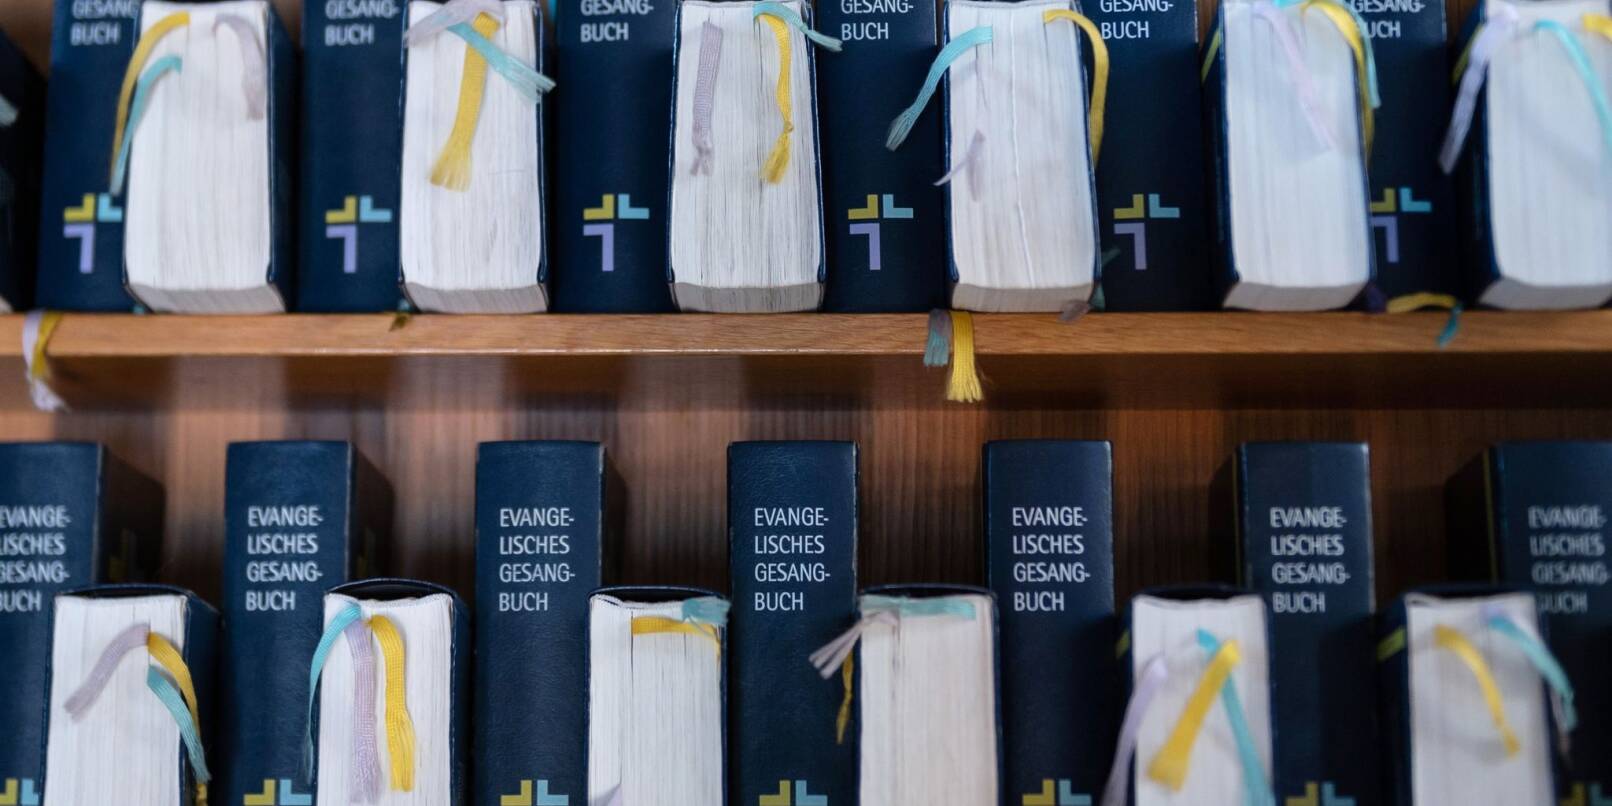 Evangelische Gesangbücher in einer Kirche.